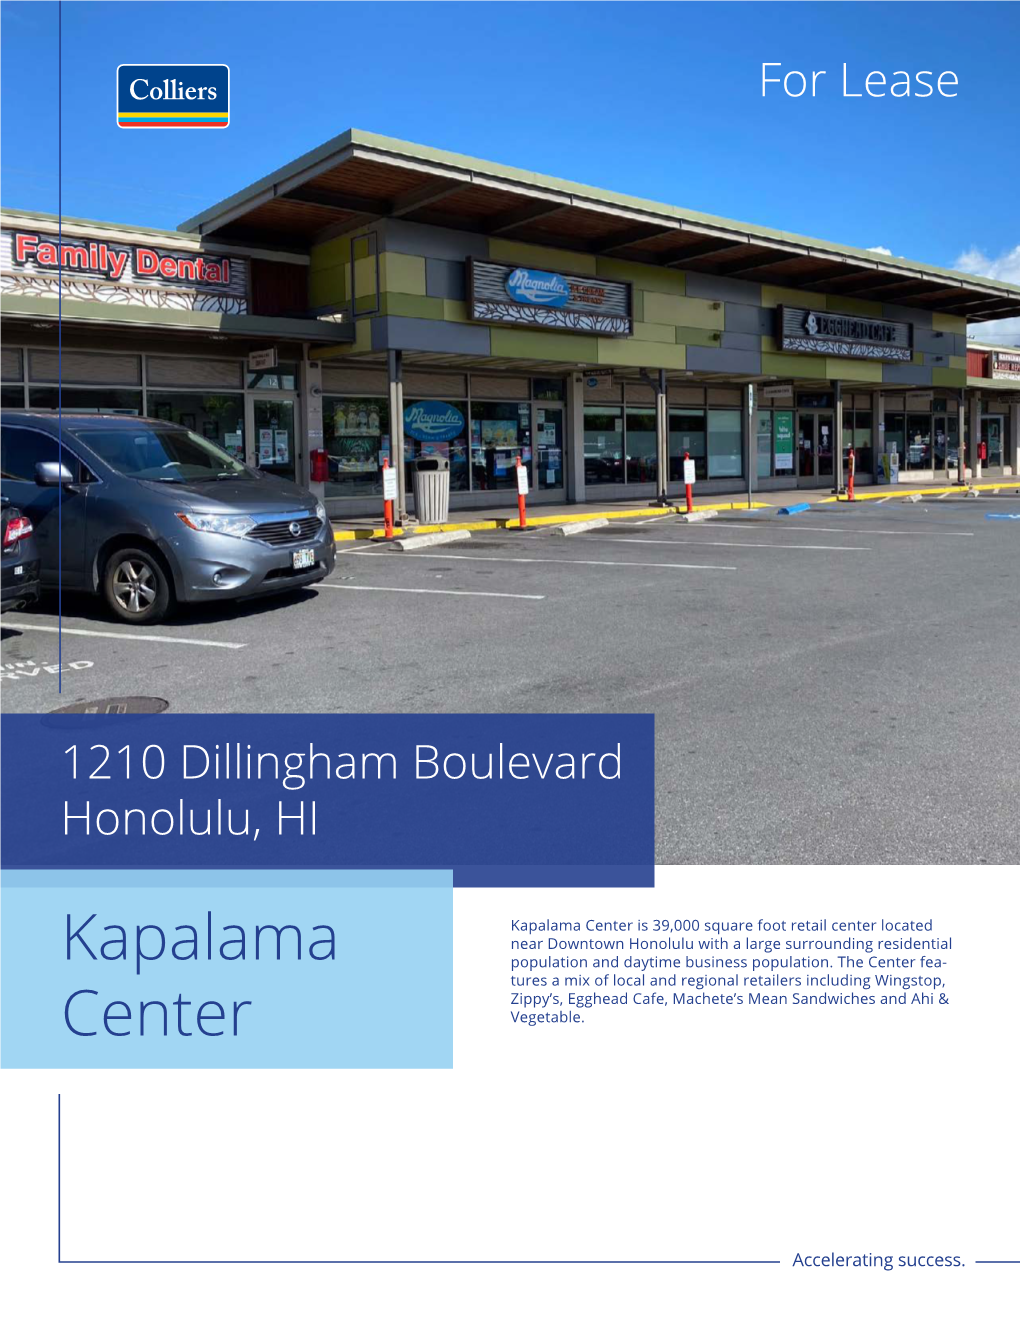 Kapalama Center